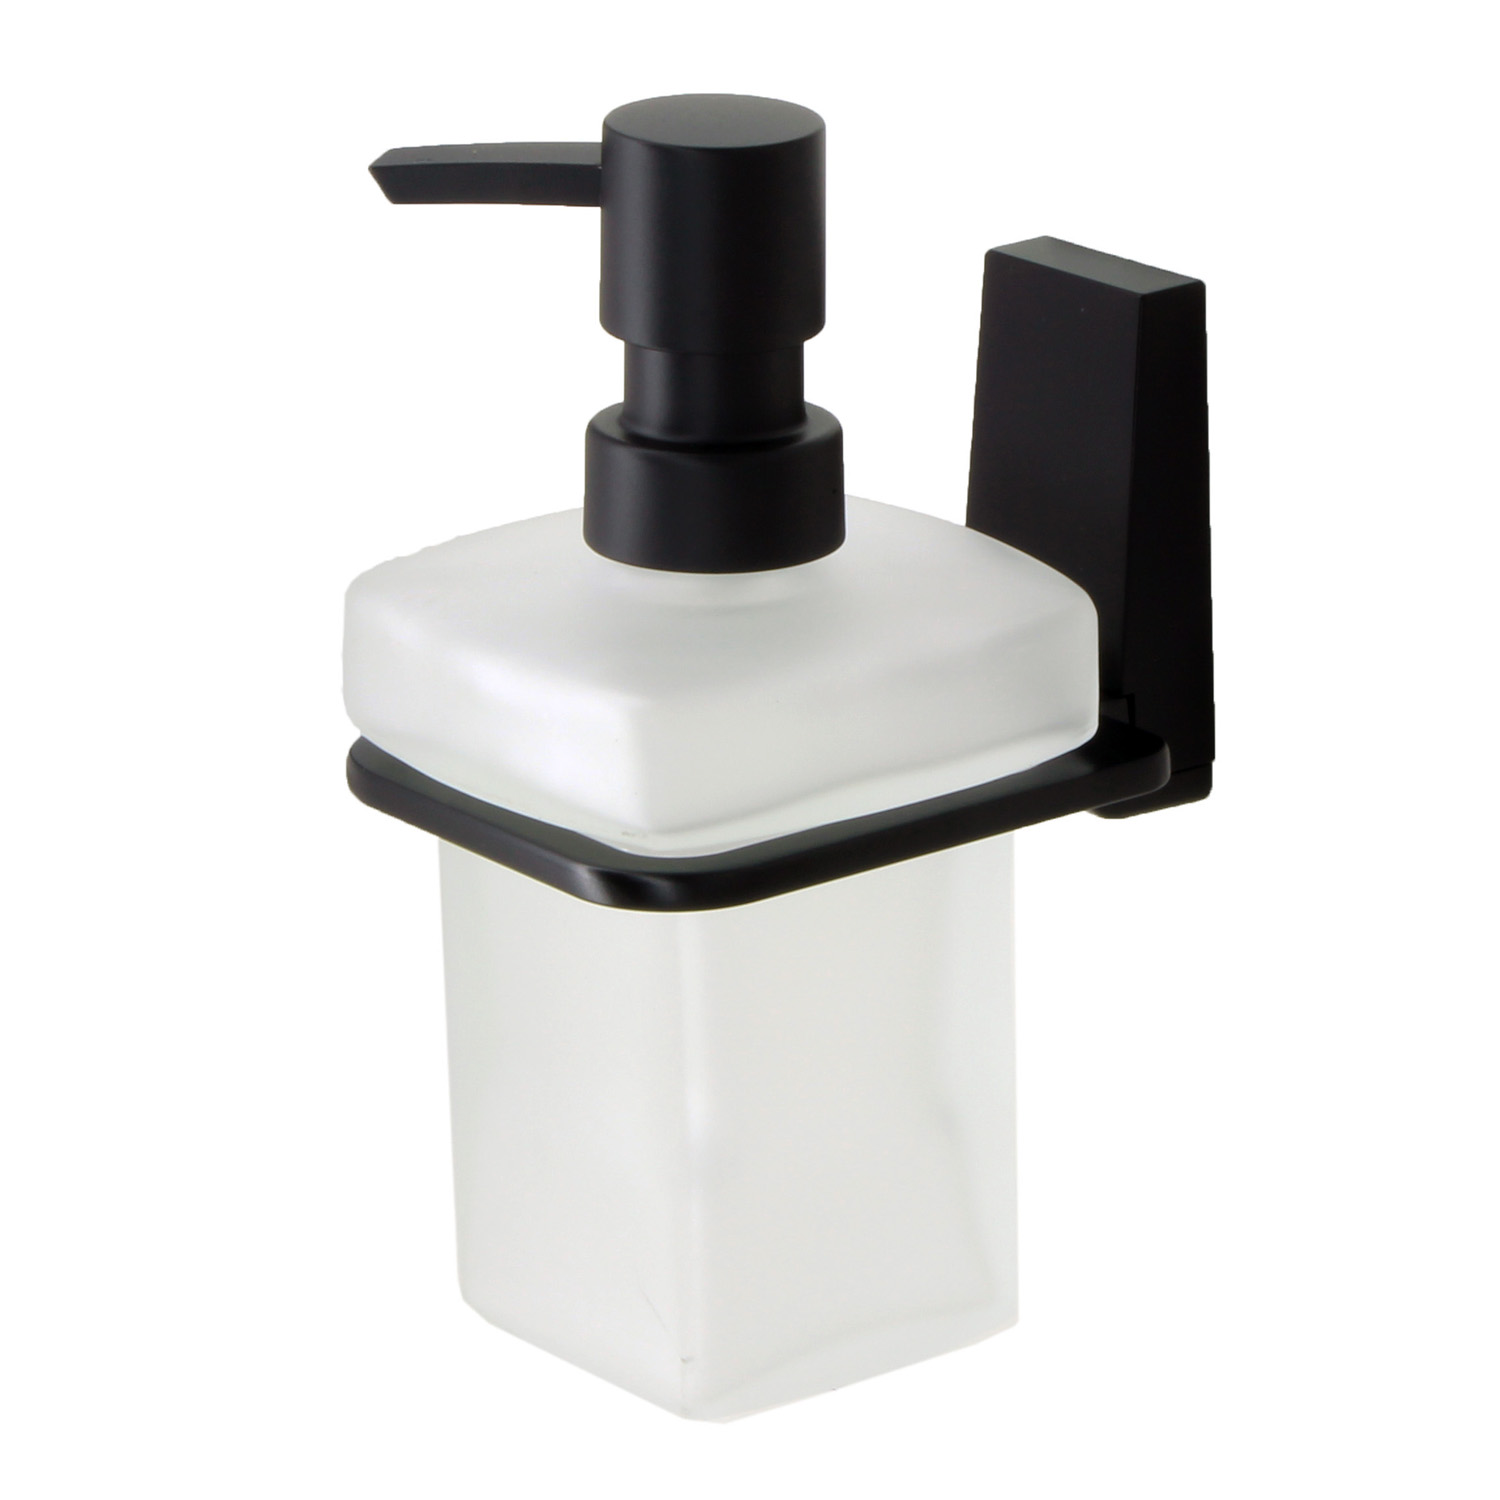 Дозатор для жидкого мыла Wasserkraft Abens чёрный 7,8х11,5х15,5 см дозатор для жидкого мыла wasserkraft abens чёрный 7 8х11 5х15 5 см